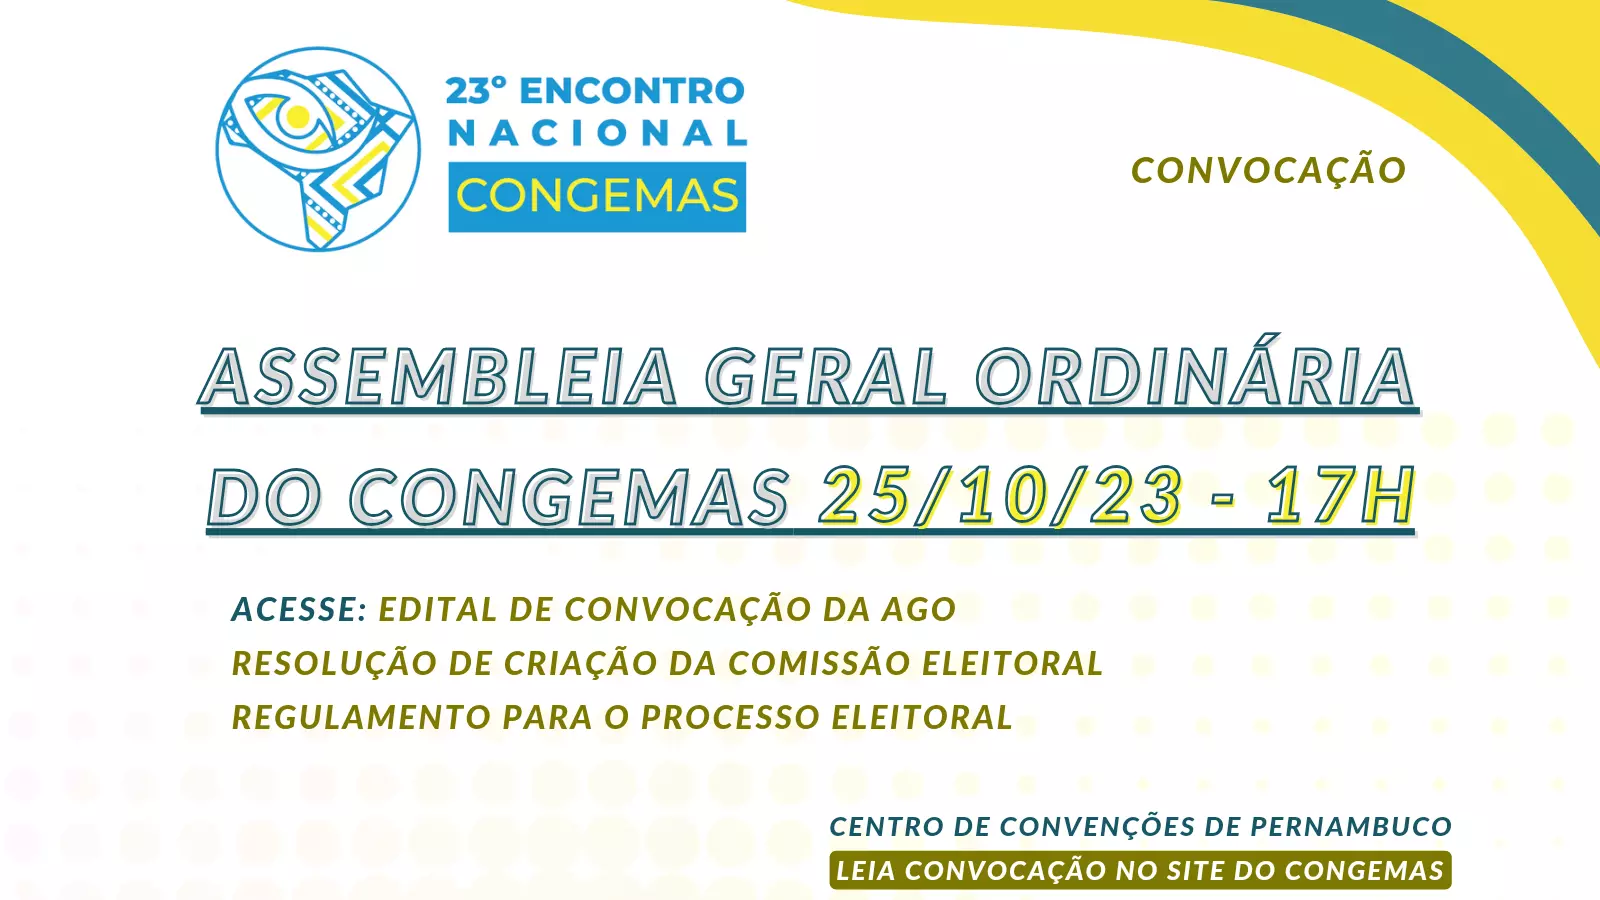 CONVOCAÇÃO - Assembleia Geral Ordinária do CONGEMAS